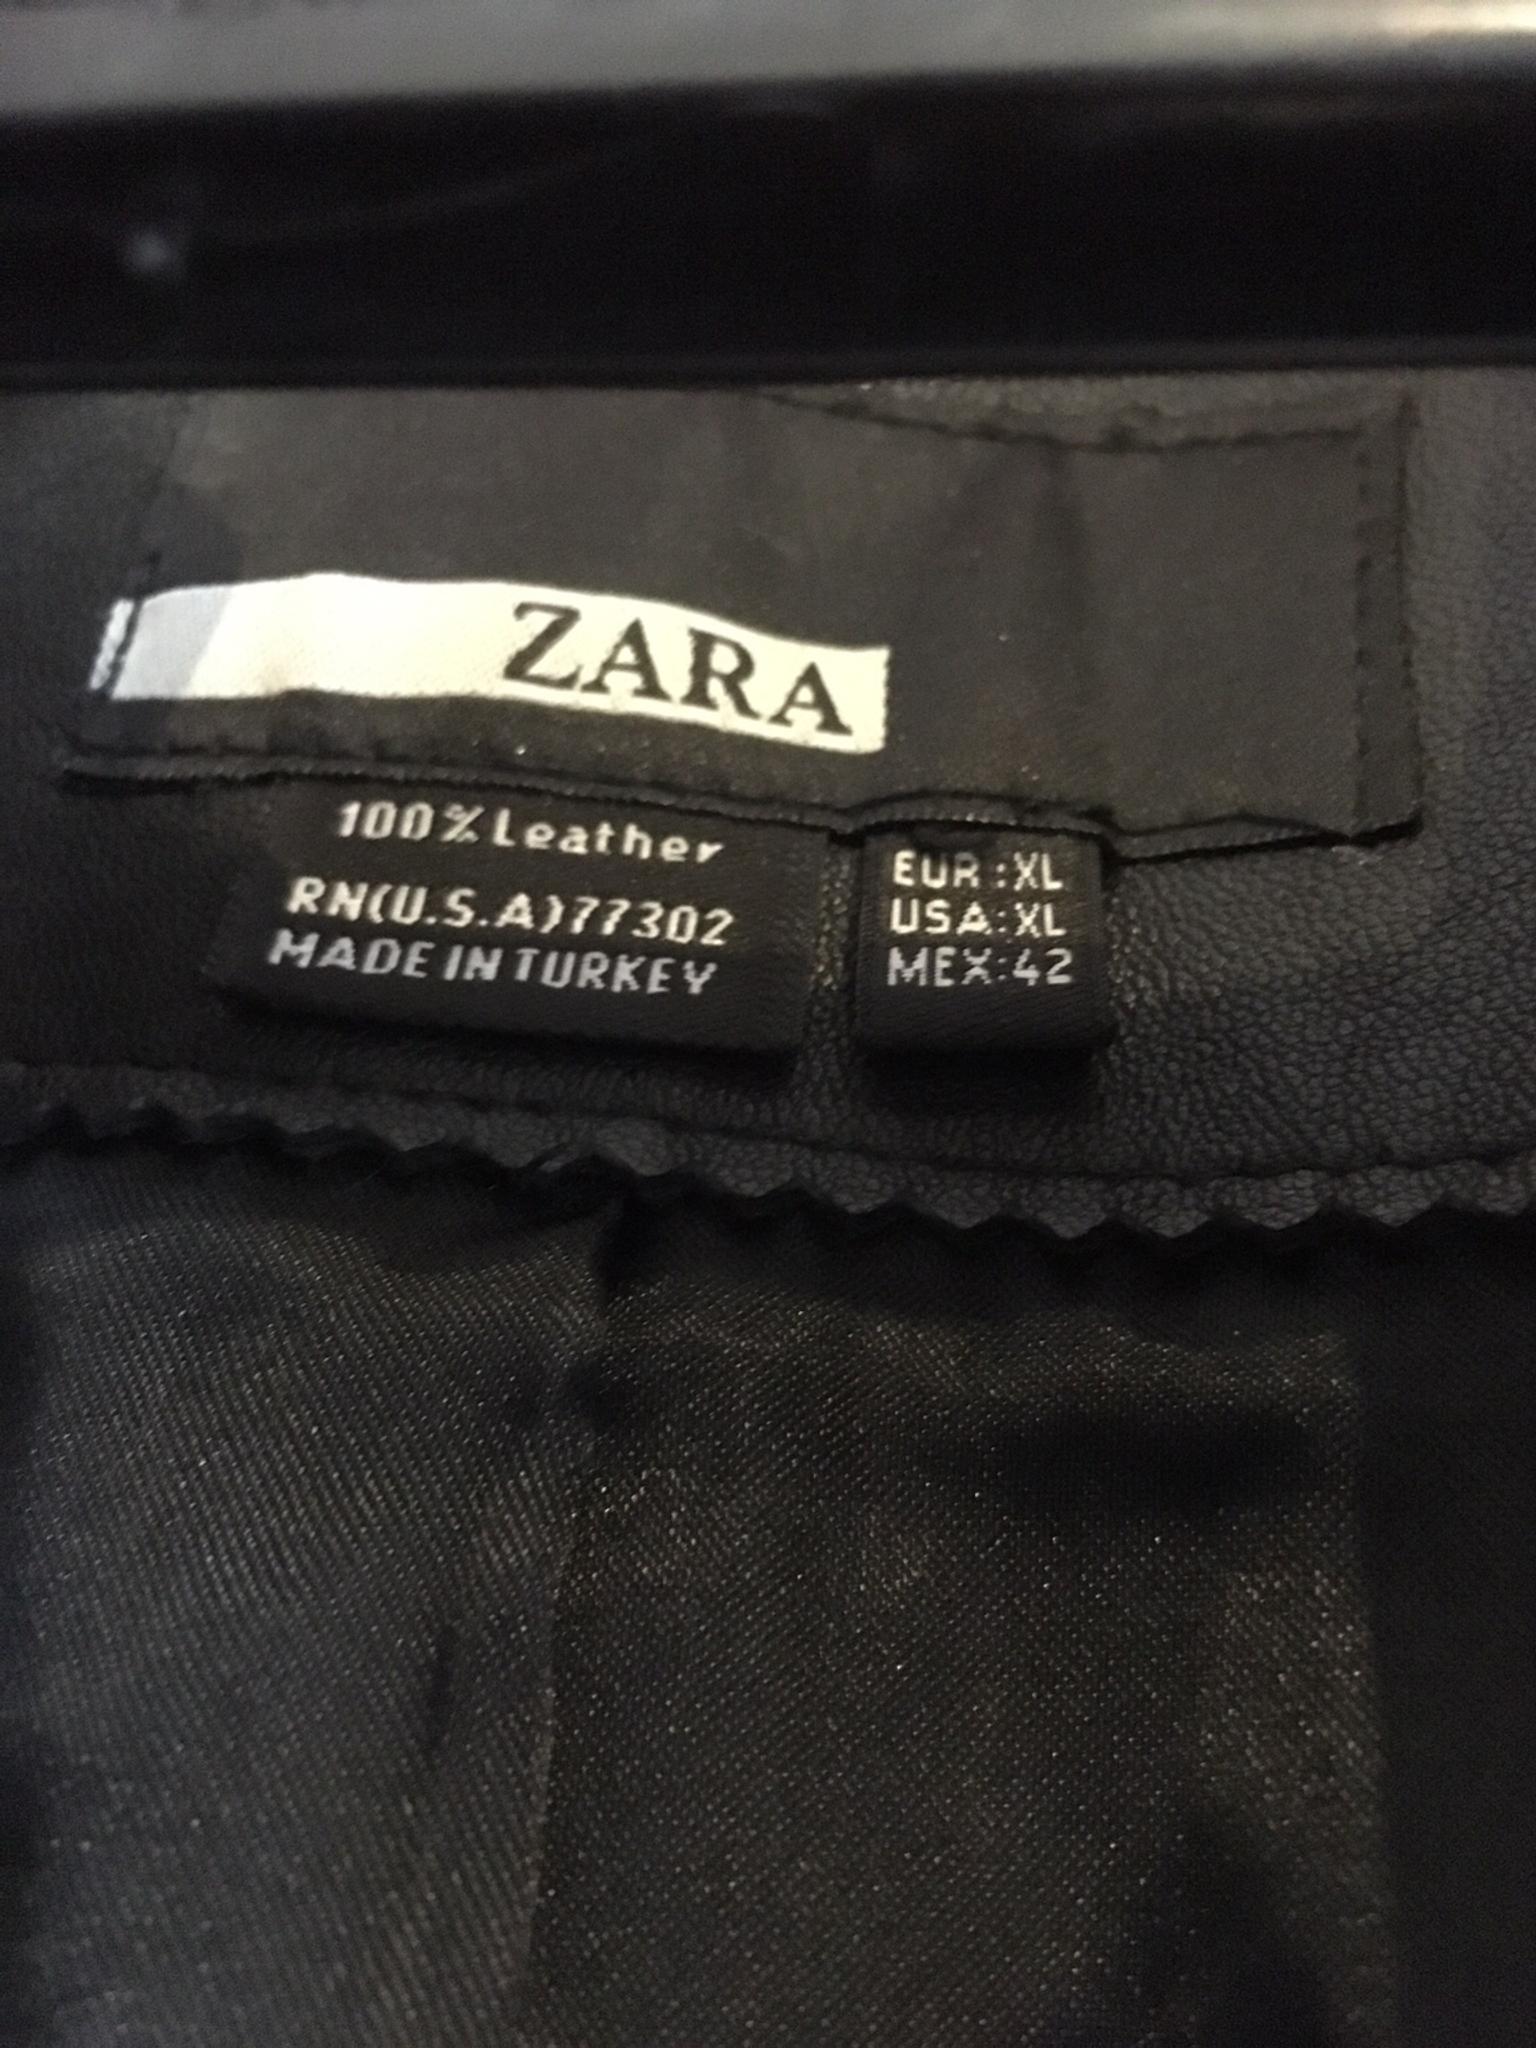 zara rn 77302 coat